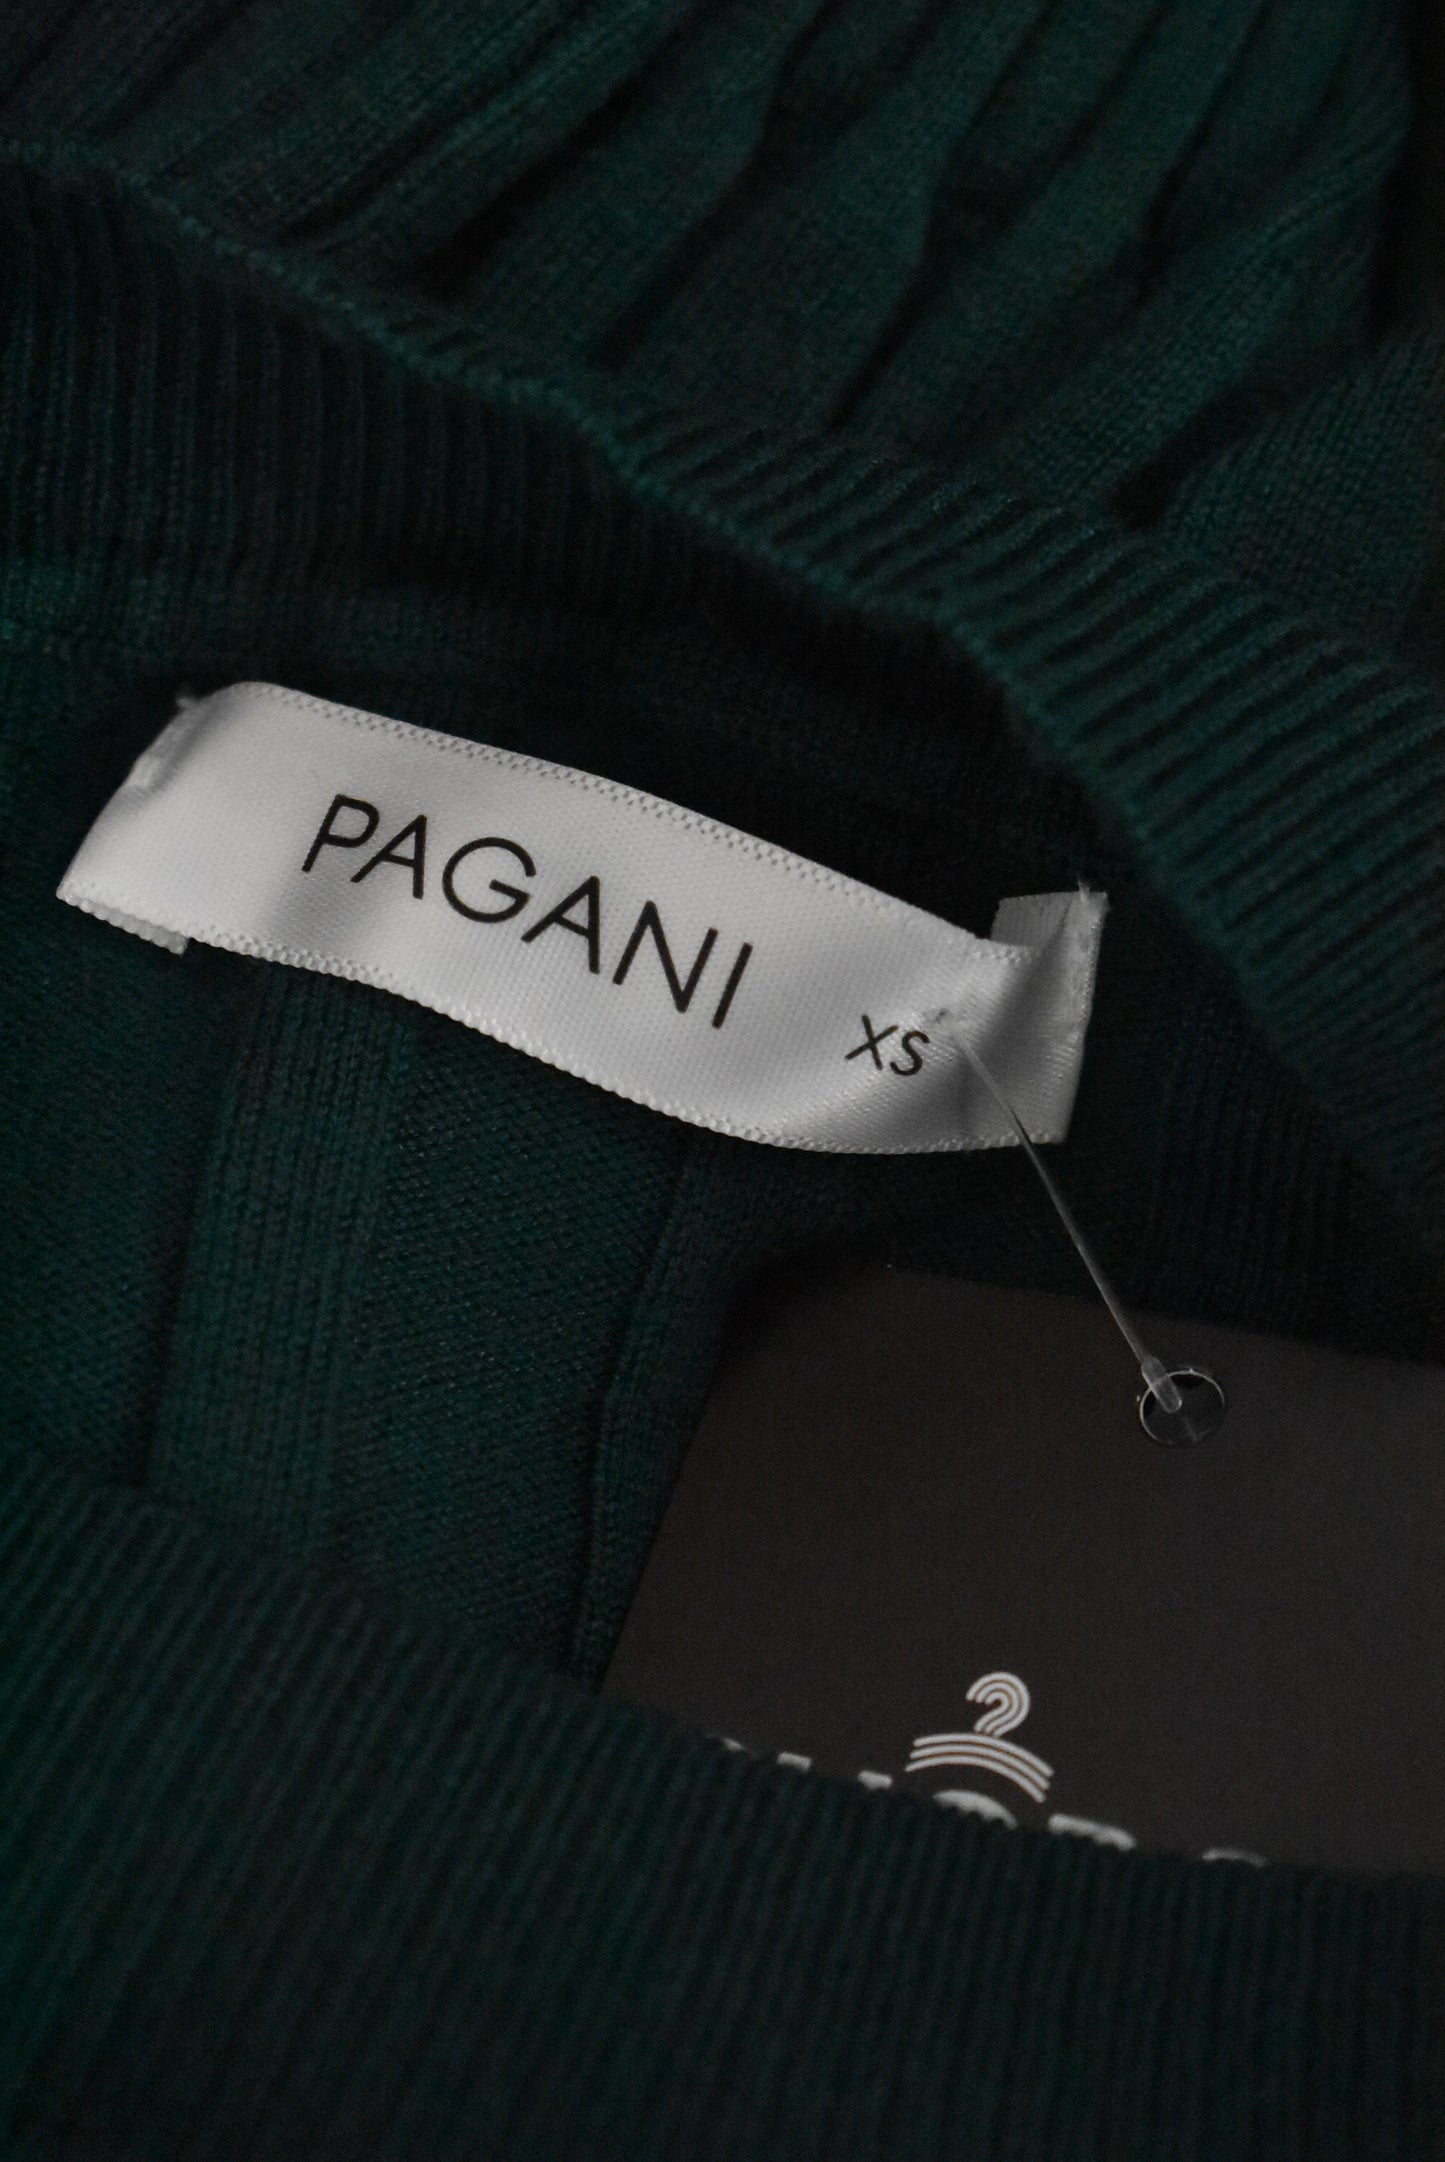 Pagani emerald green ribbed long sleeve knit top, XS